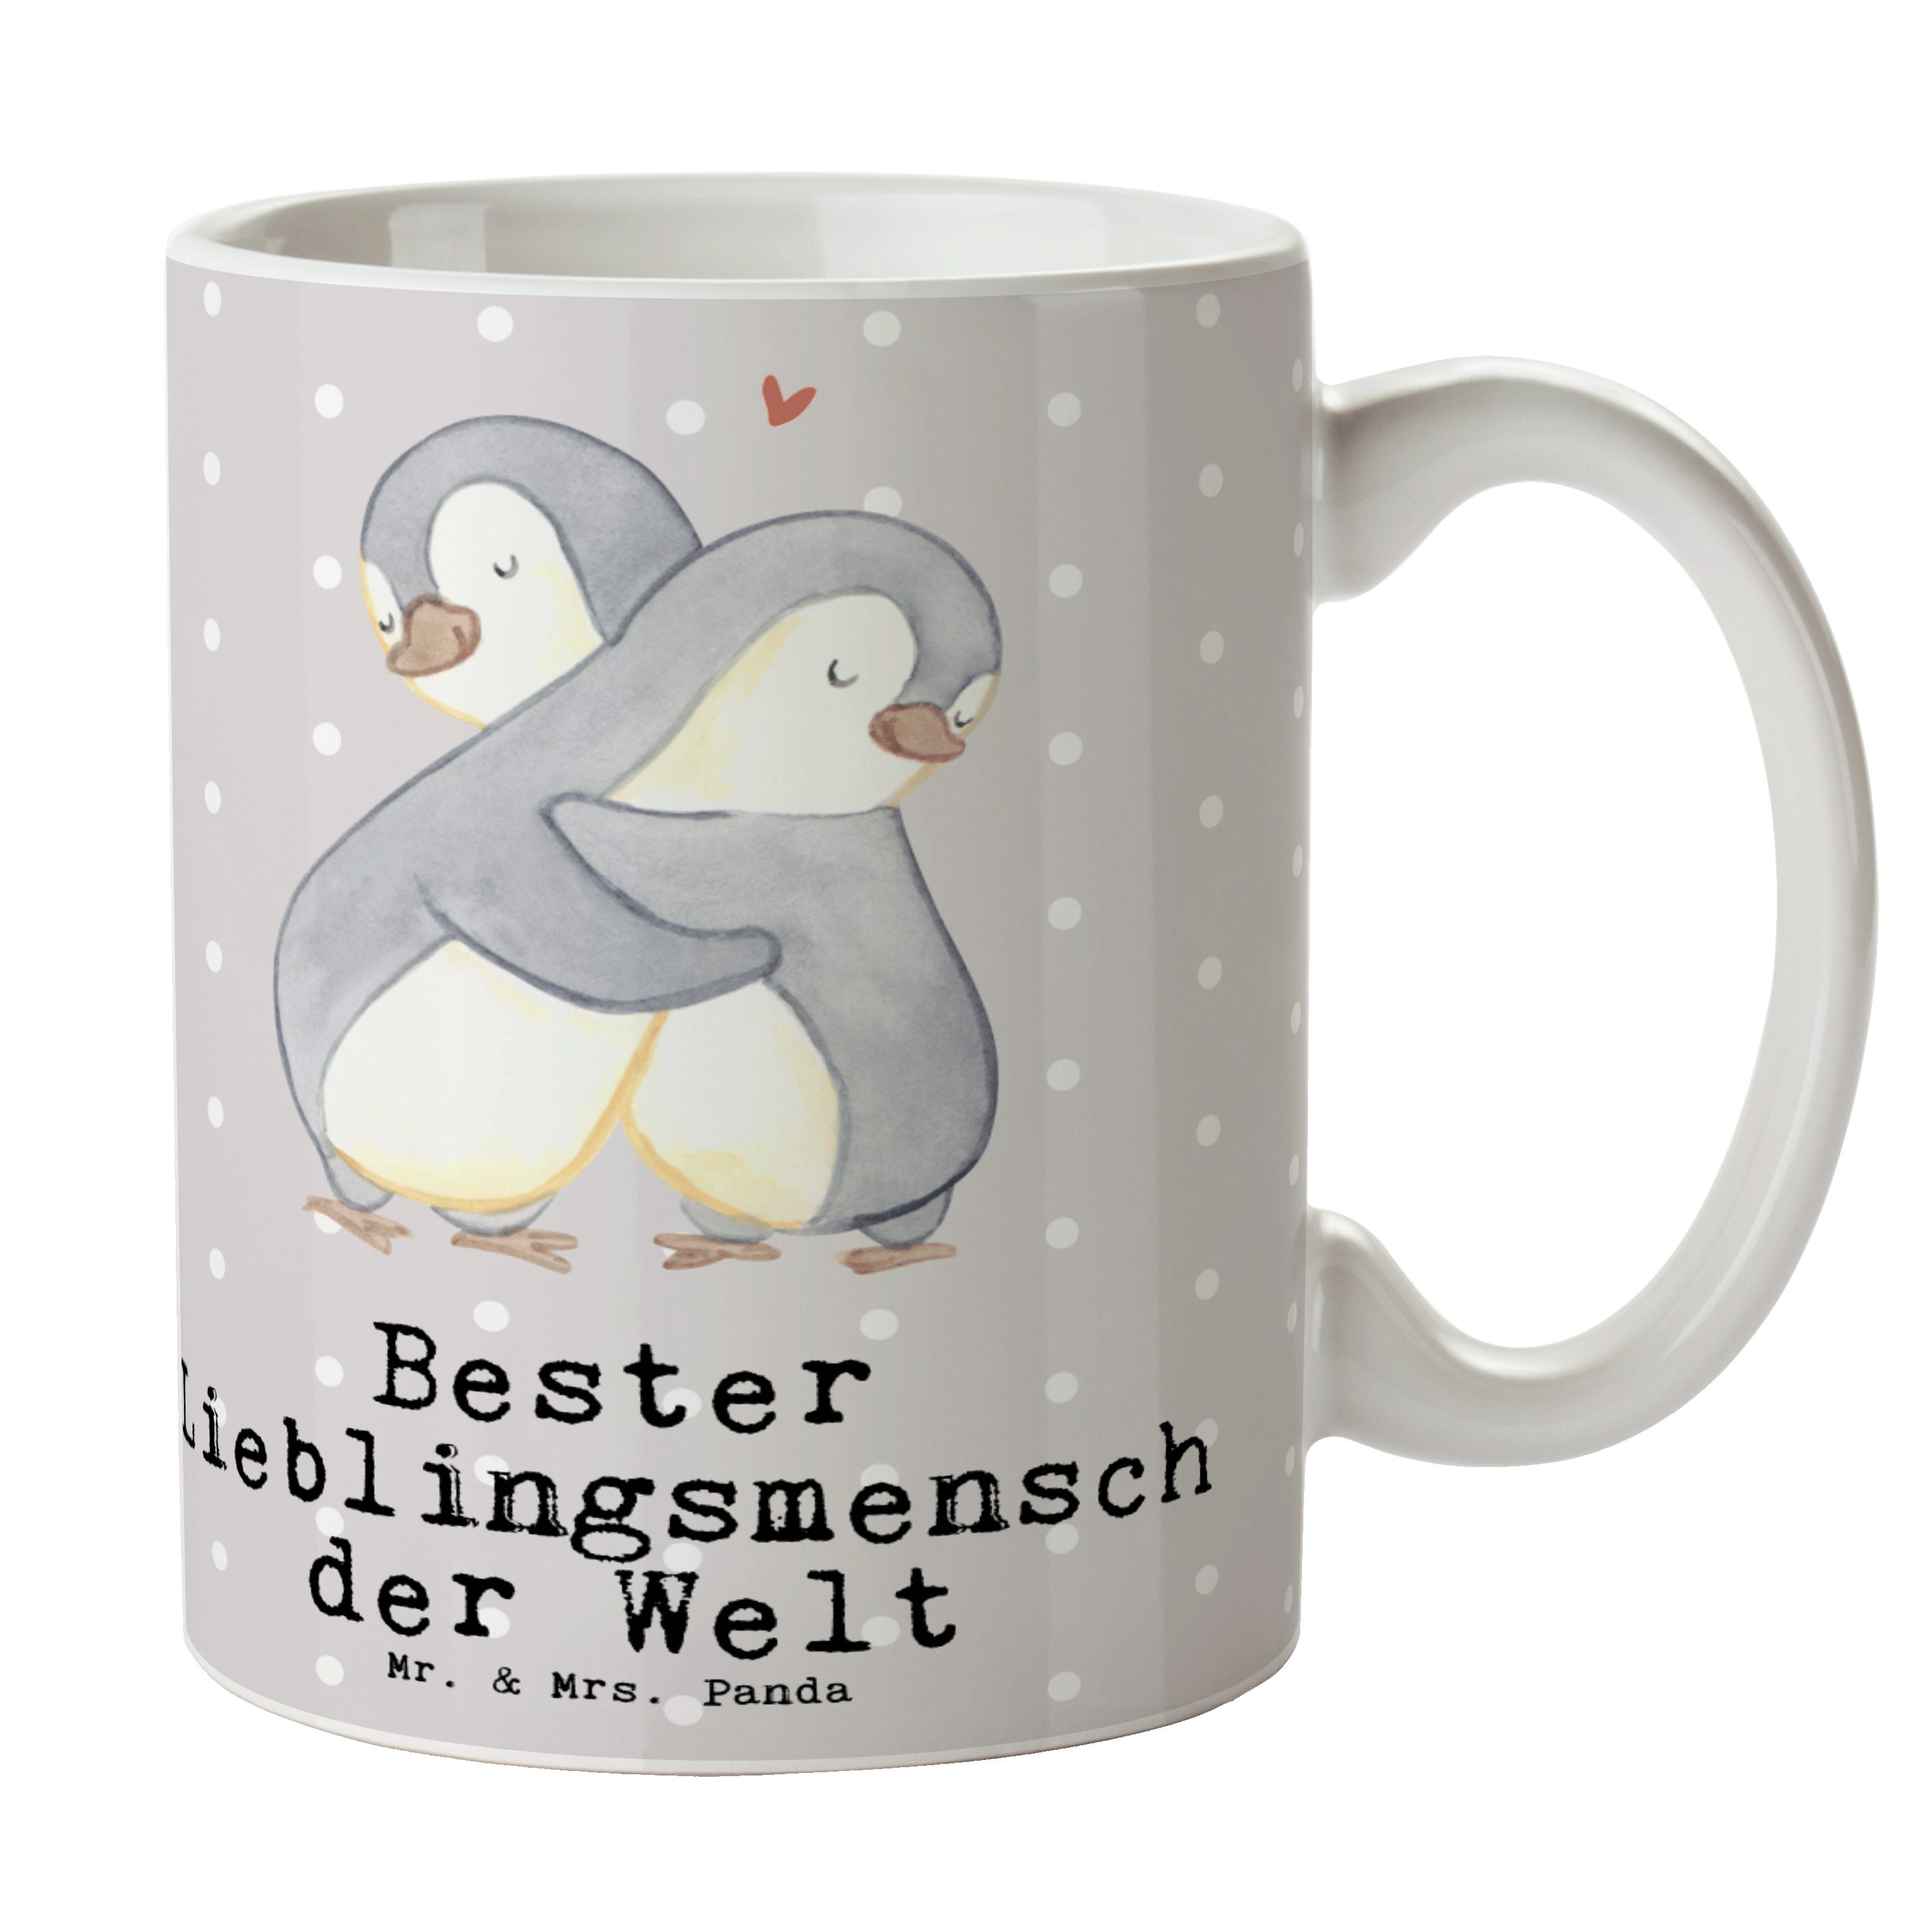 Mr. & Mrs. Panda Bester Geschenk, Lieblingsmensch Welt der - Pinguin Te, Keramik Pastell Tasse - Grau